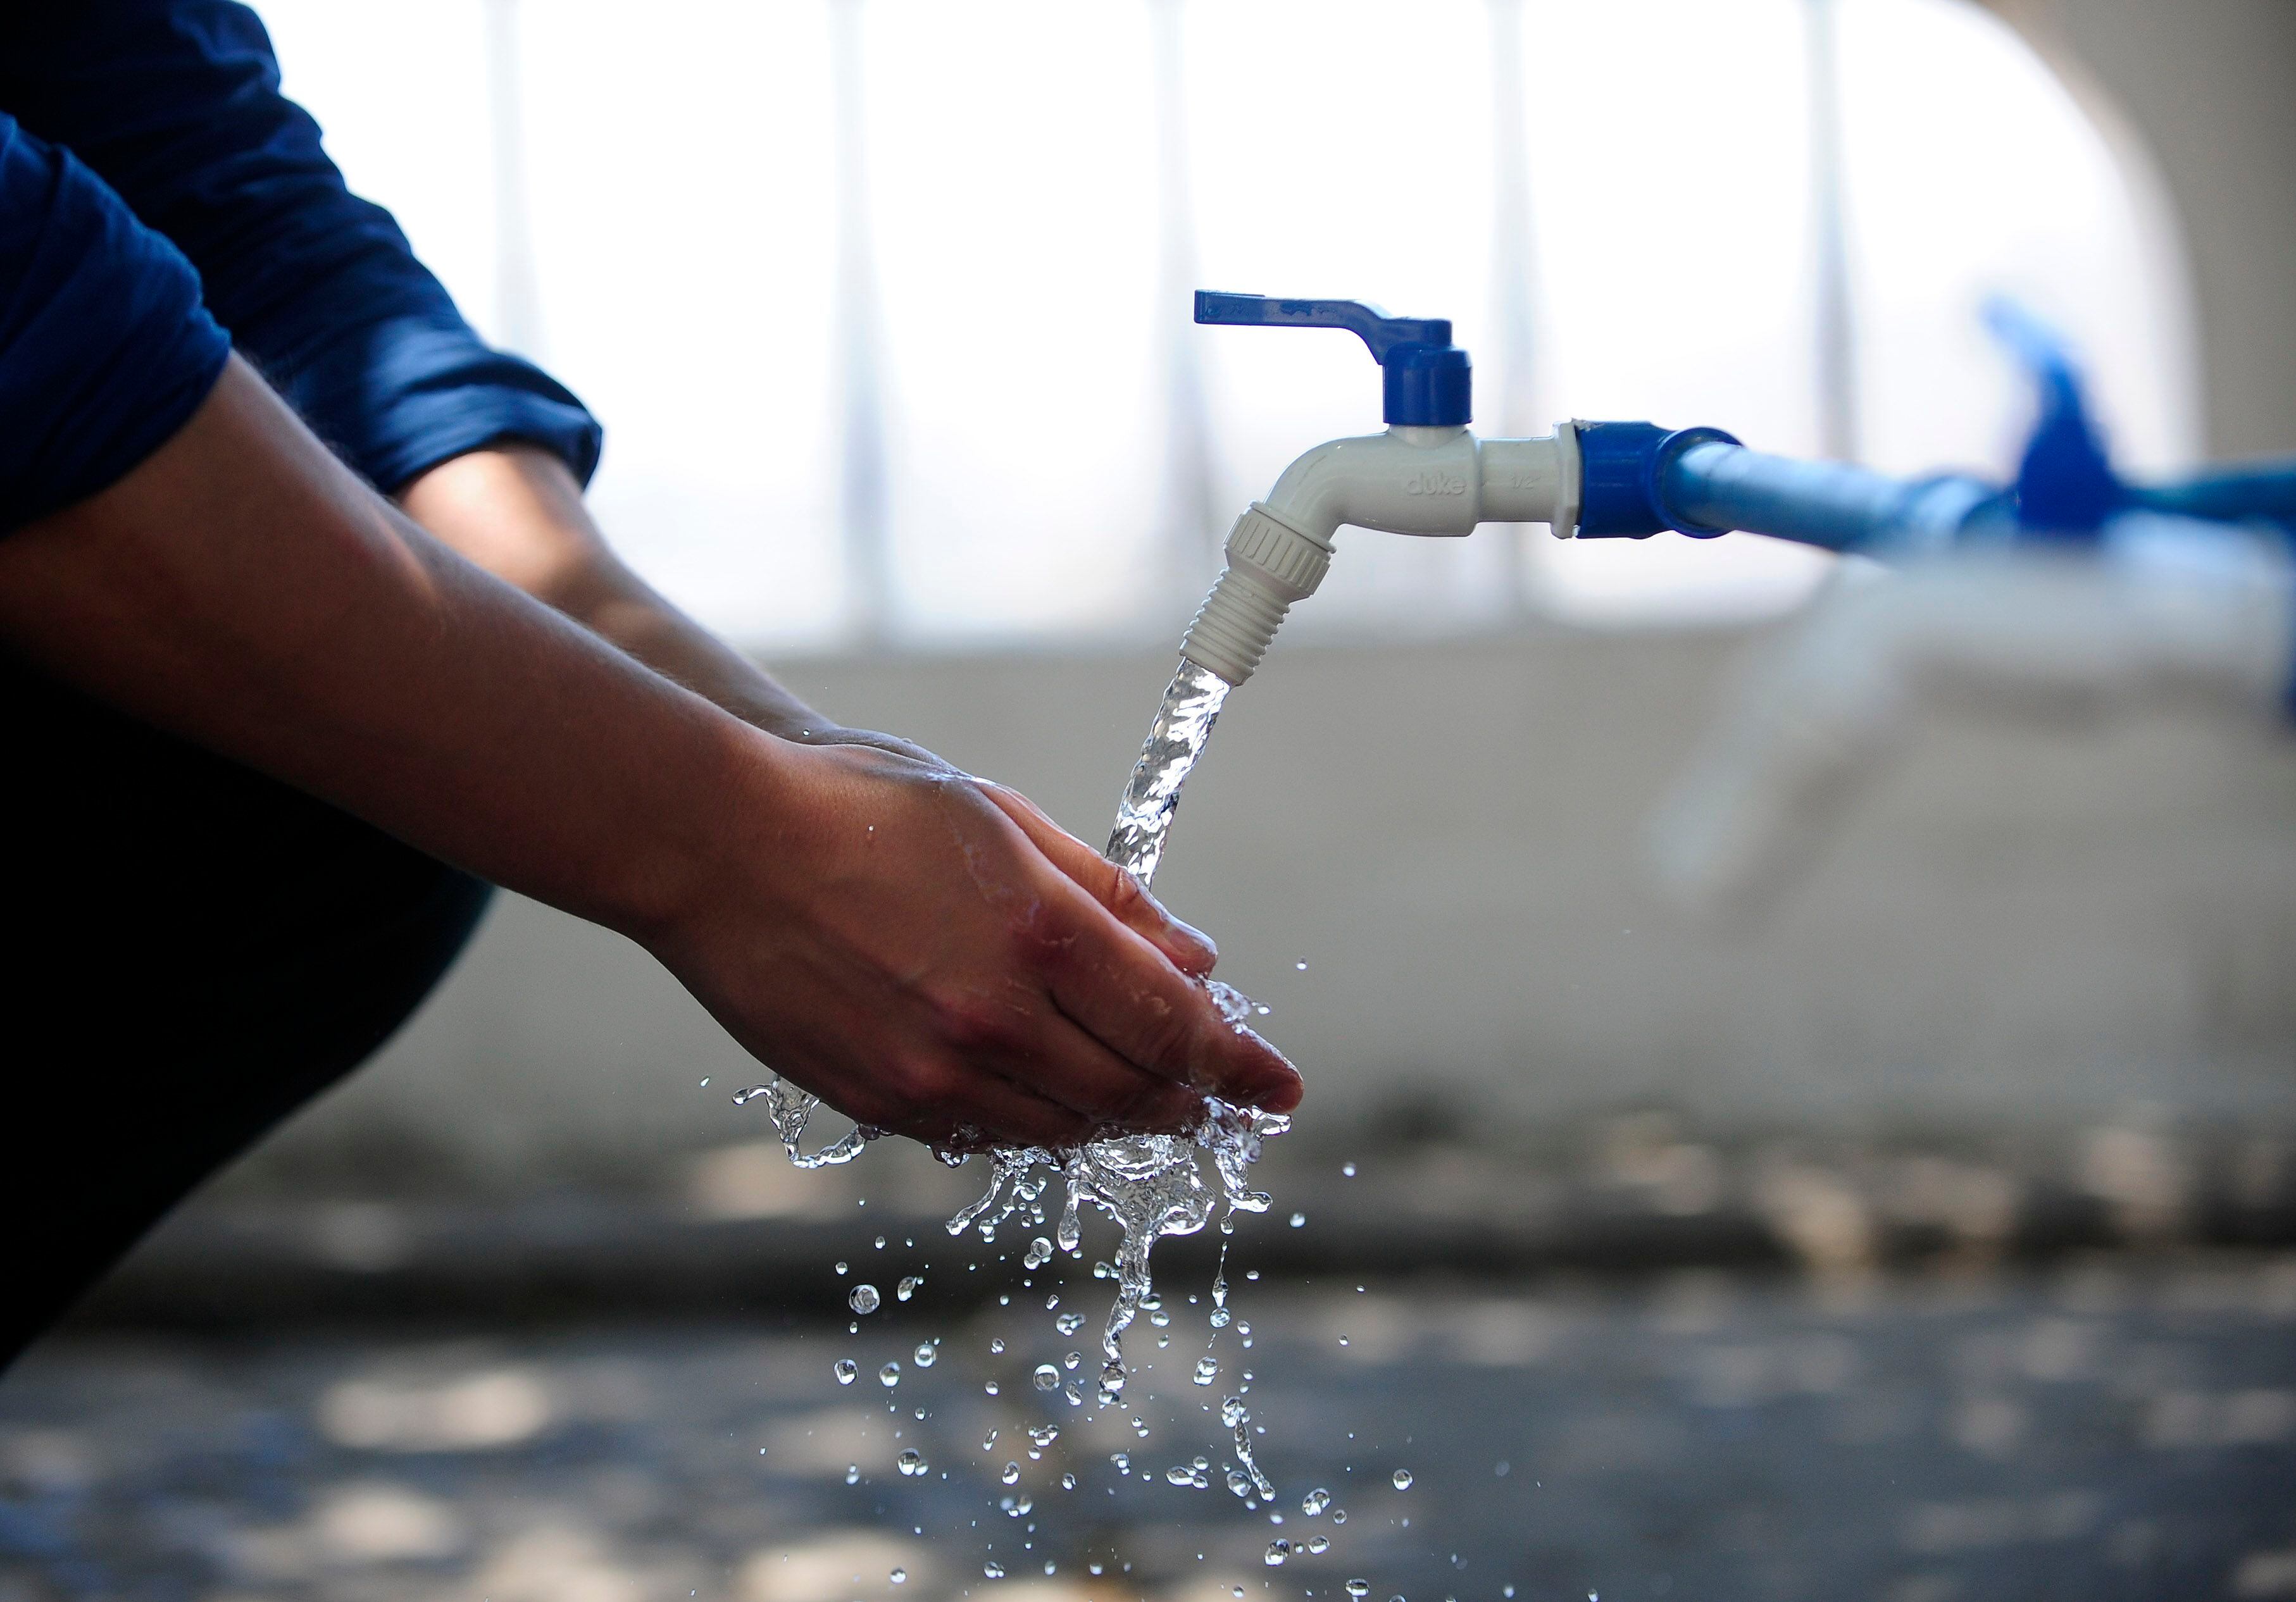 el alarmante “día cero absoluto” podría estar cerca: informe prevé cuándo santiago se quedará sin reservas de agua